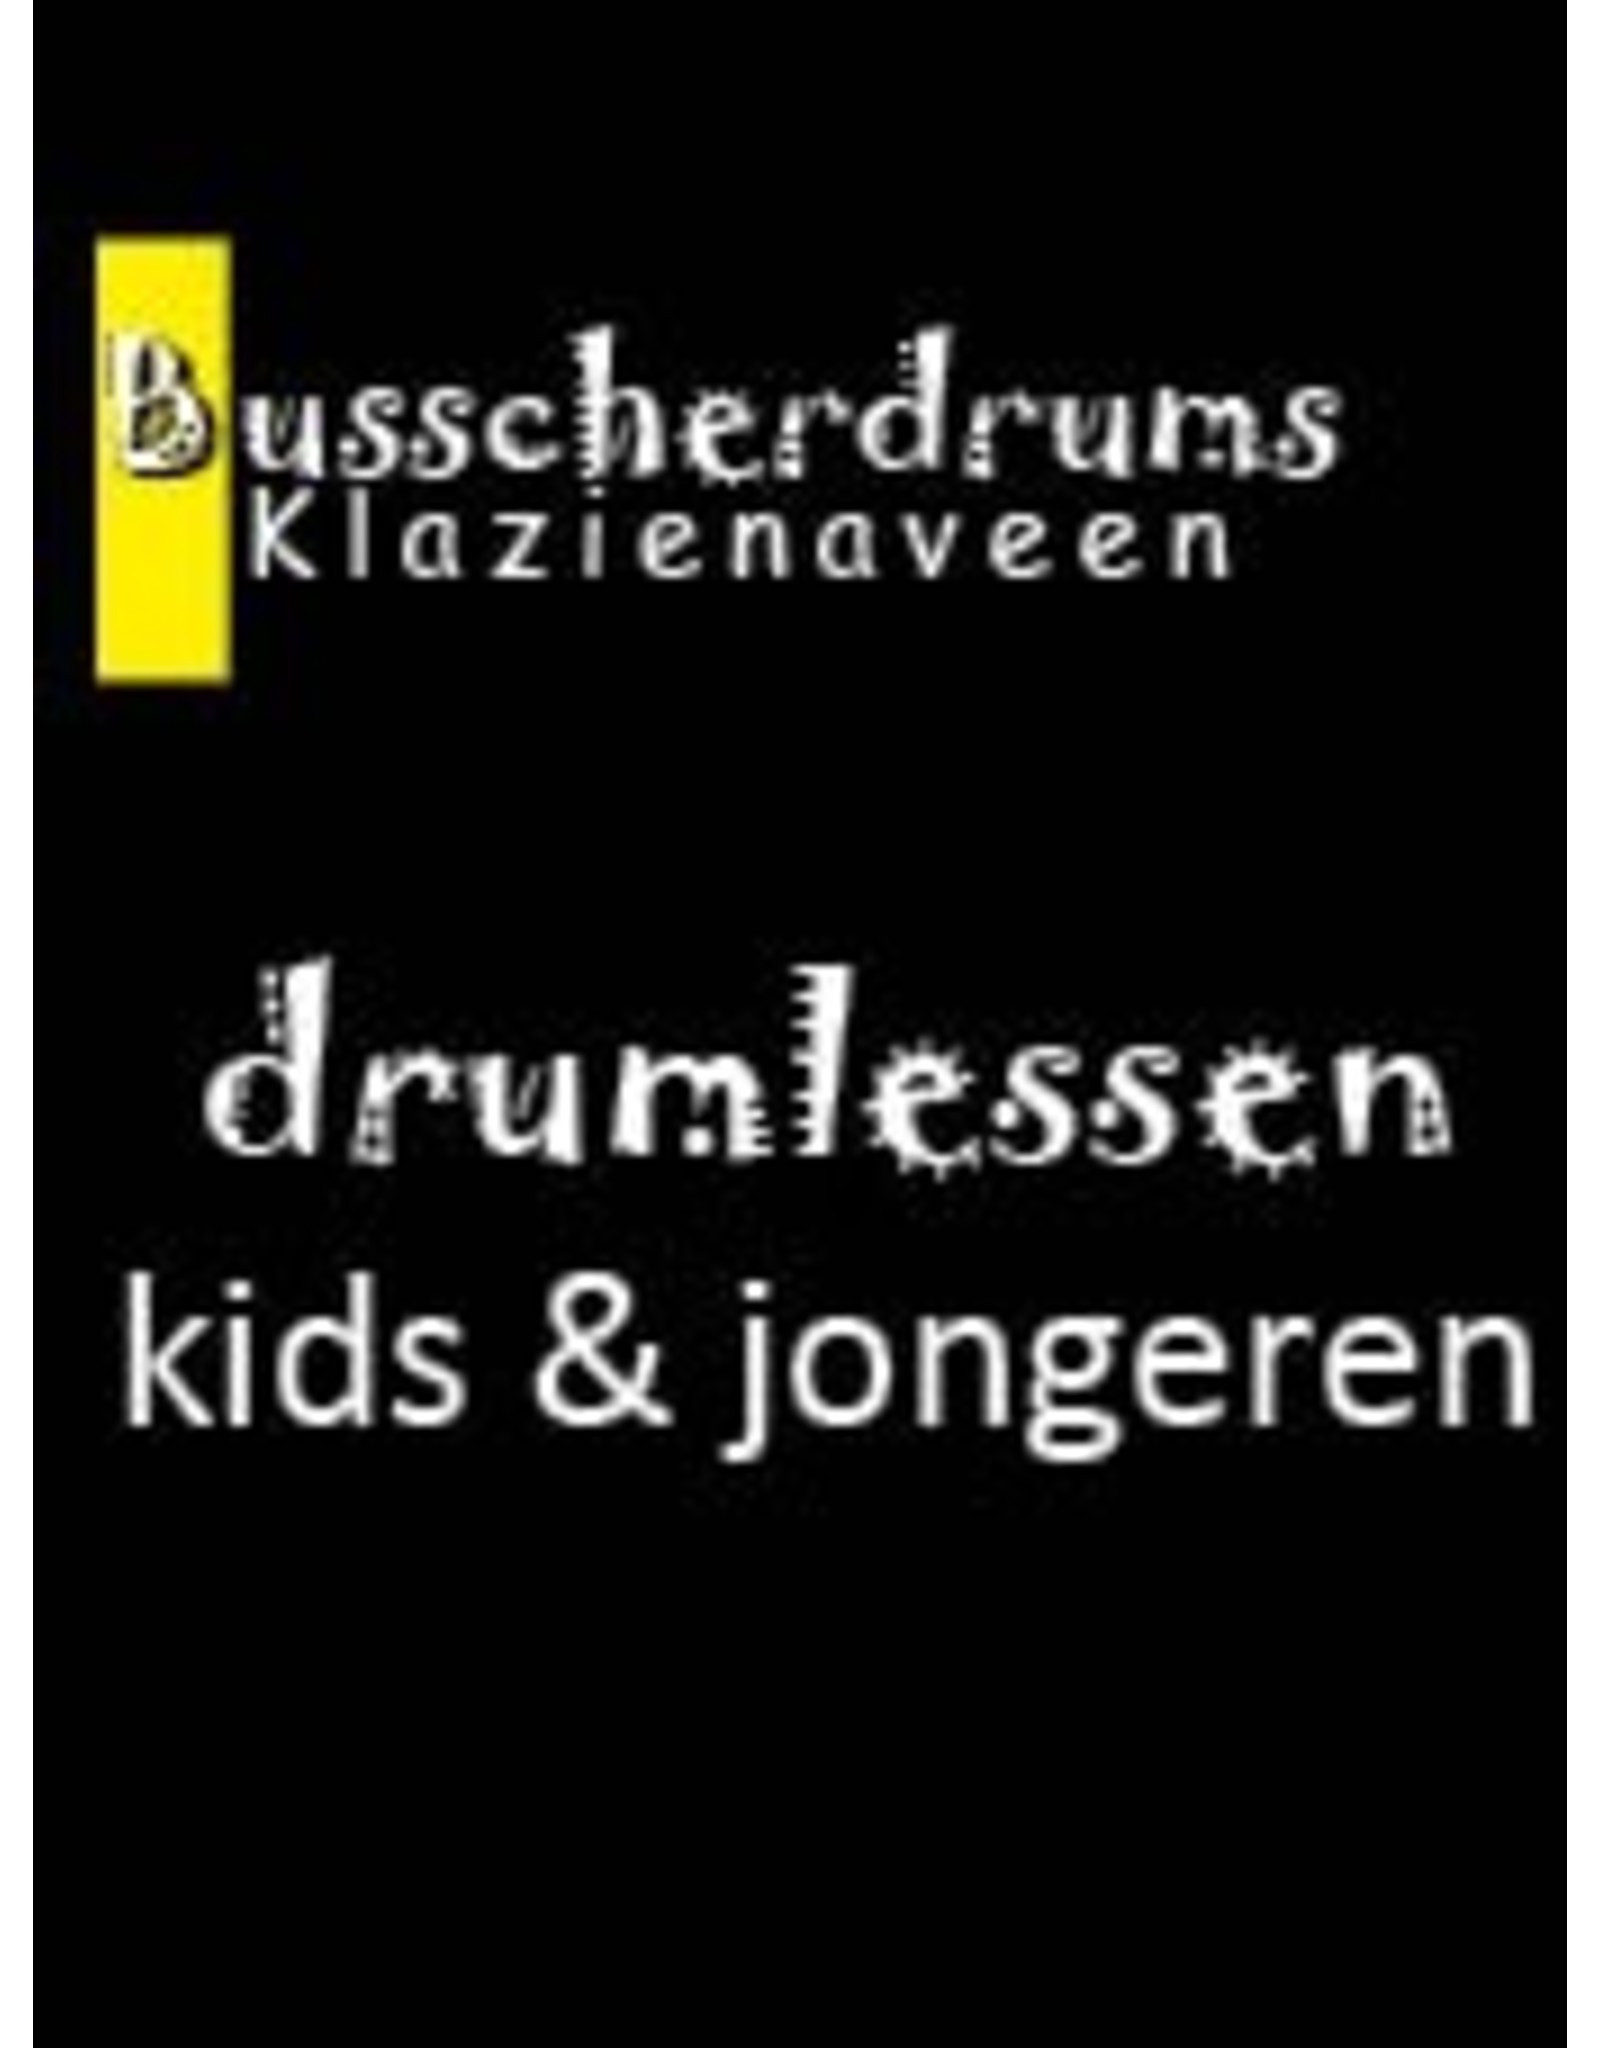 Busscherdrums Drumlessen jaarkaart 15 x 25 minuten jongeren 60707